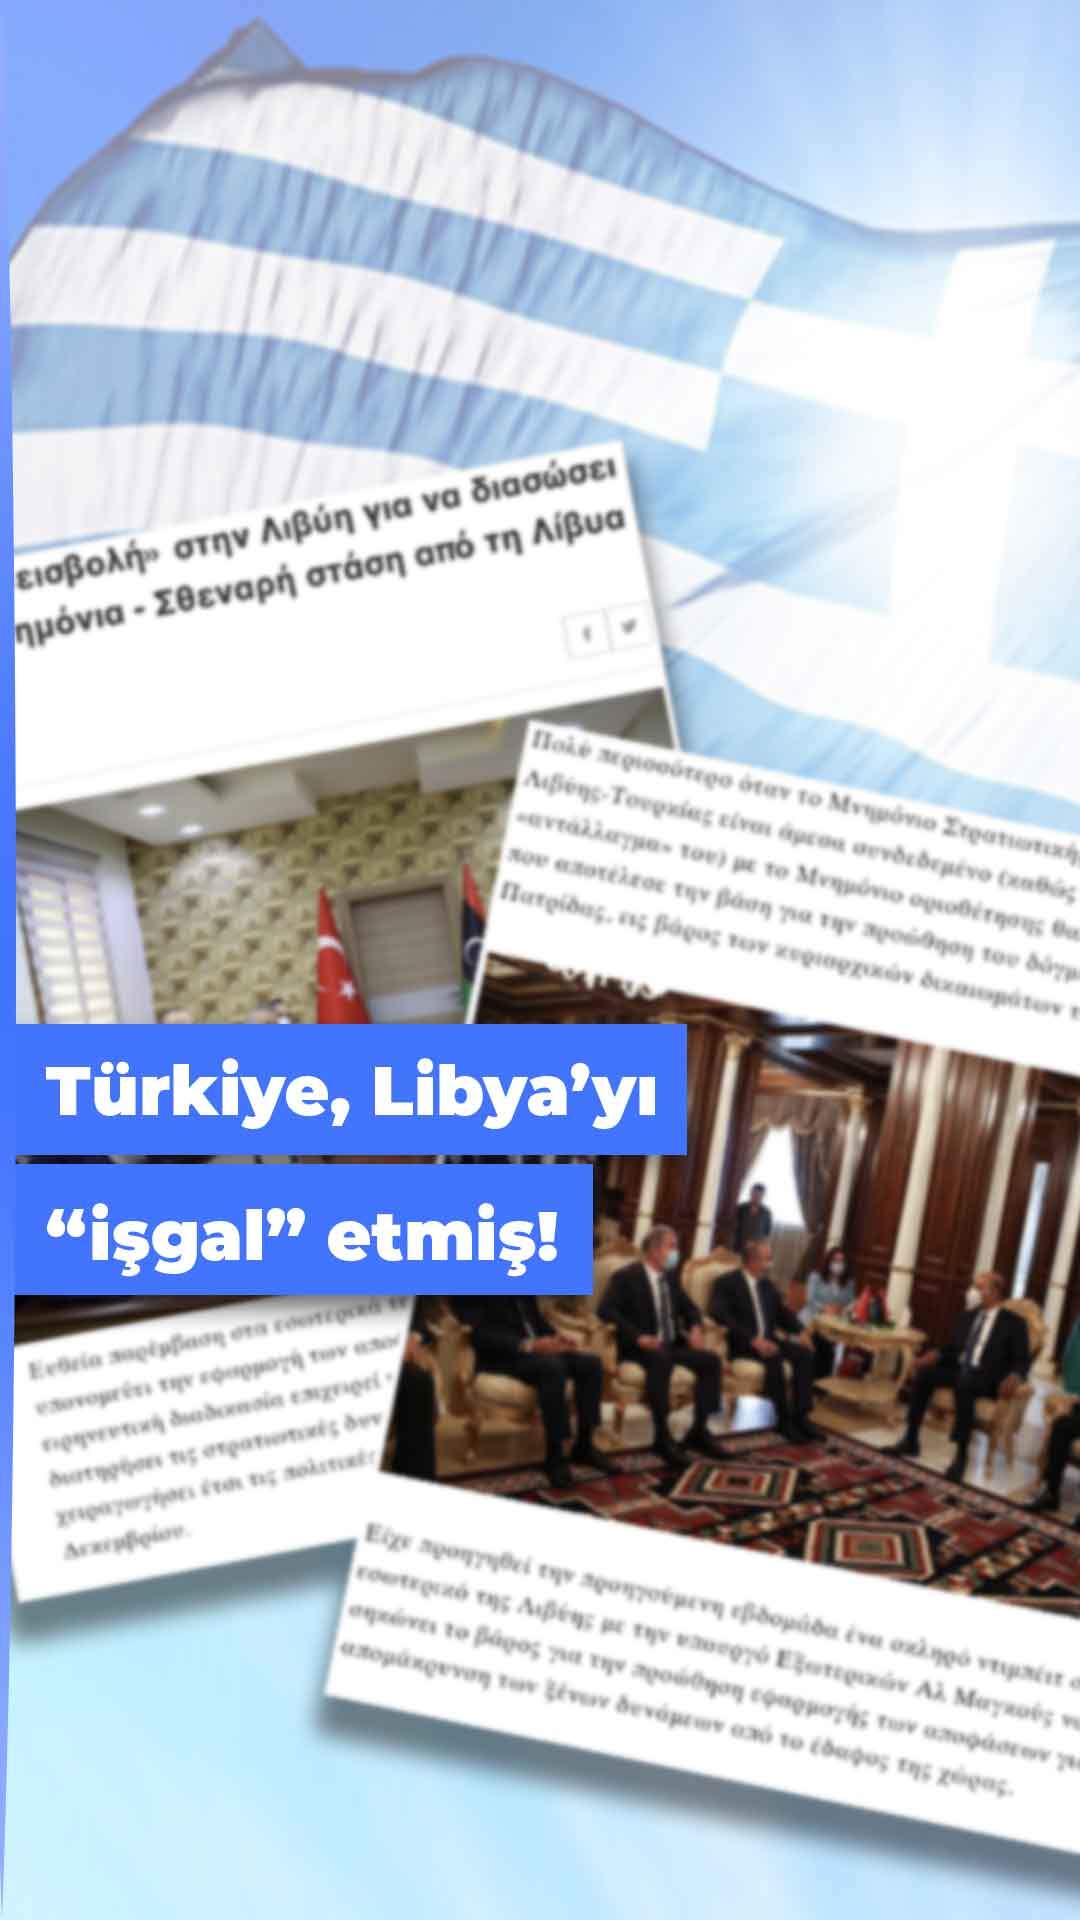 Yunanlardan komik yorum: Türkiye, Libya'yı işgal etti!